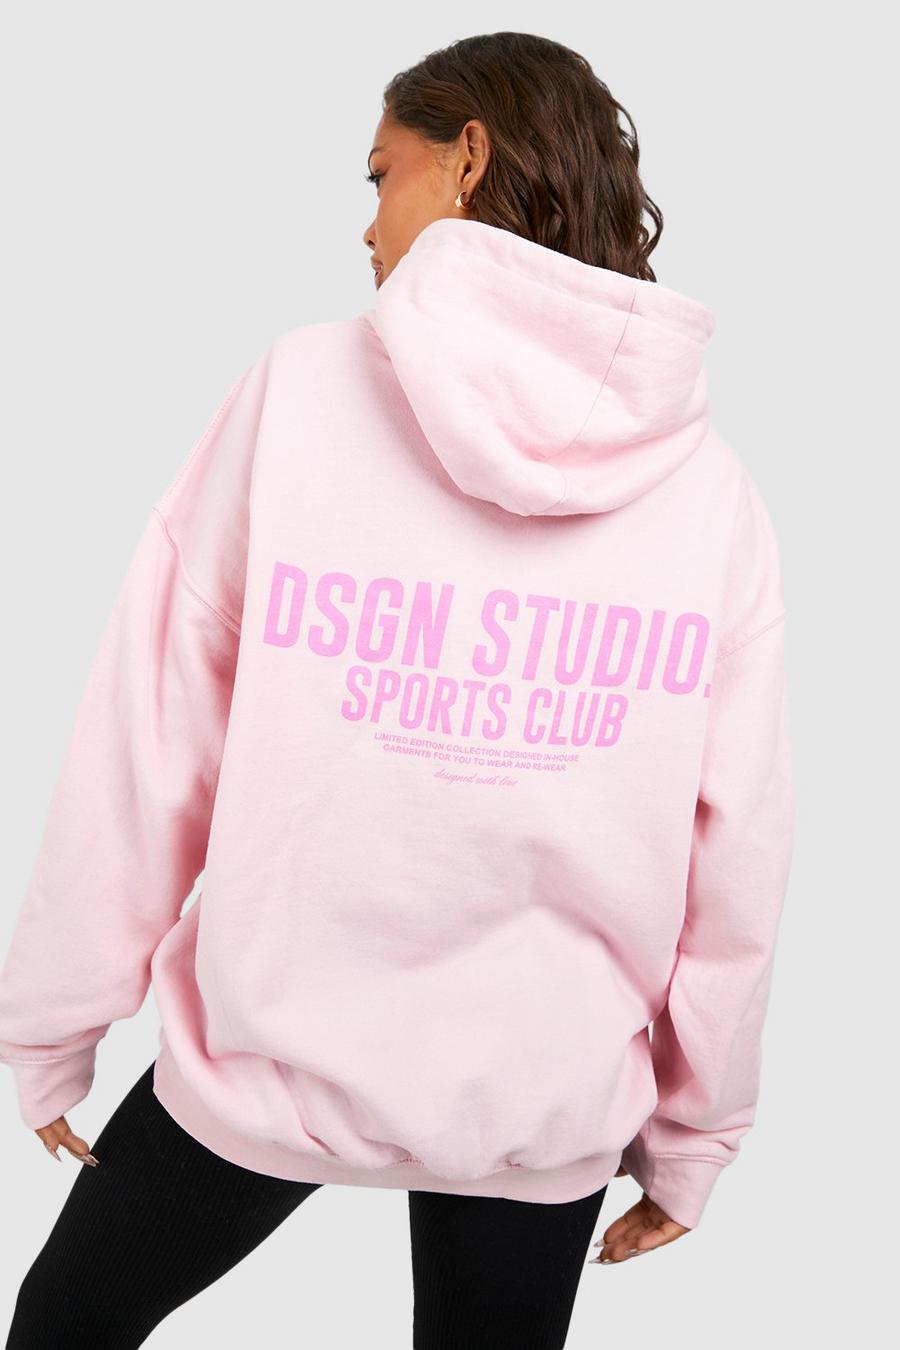 Felpa oversize con stampa di slogan Dsgn Studio Sports Club e cappuccio, Light pink